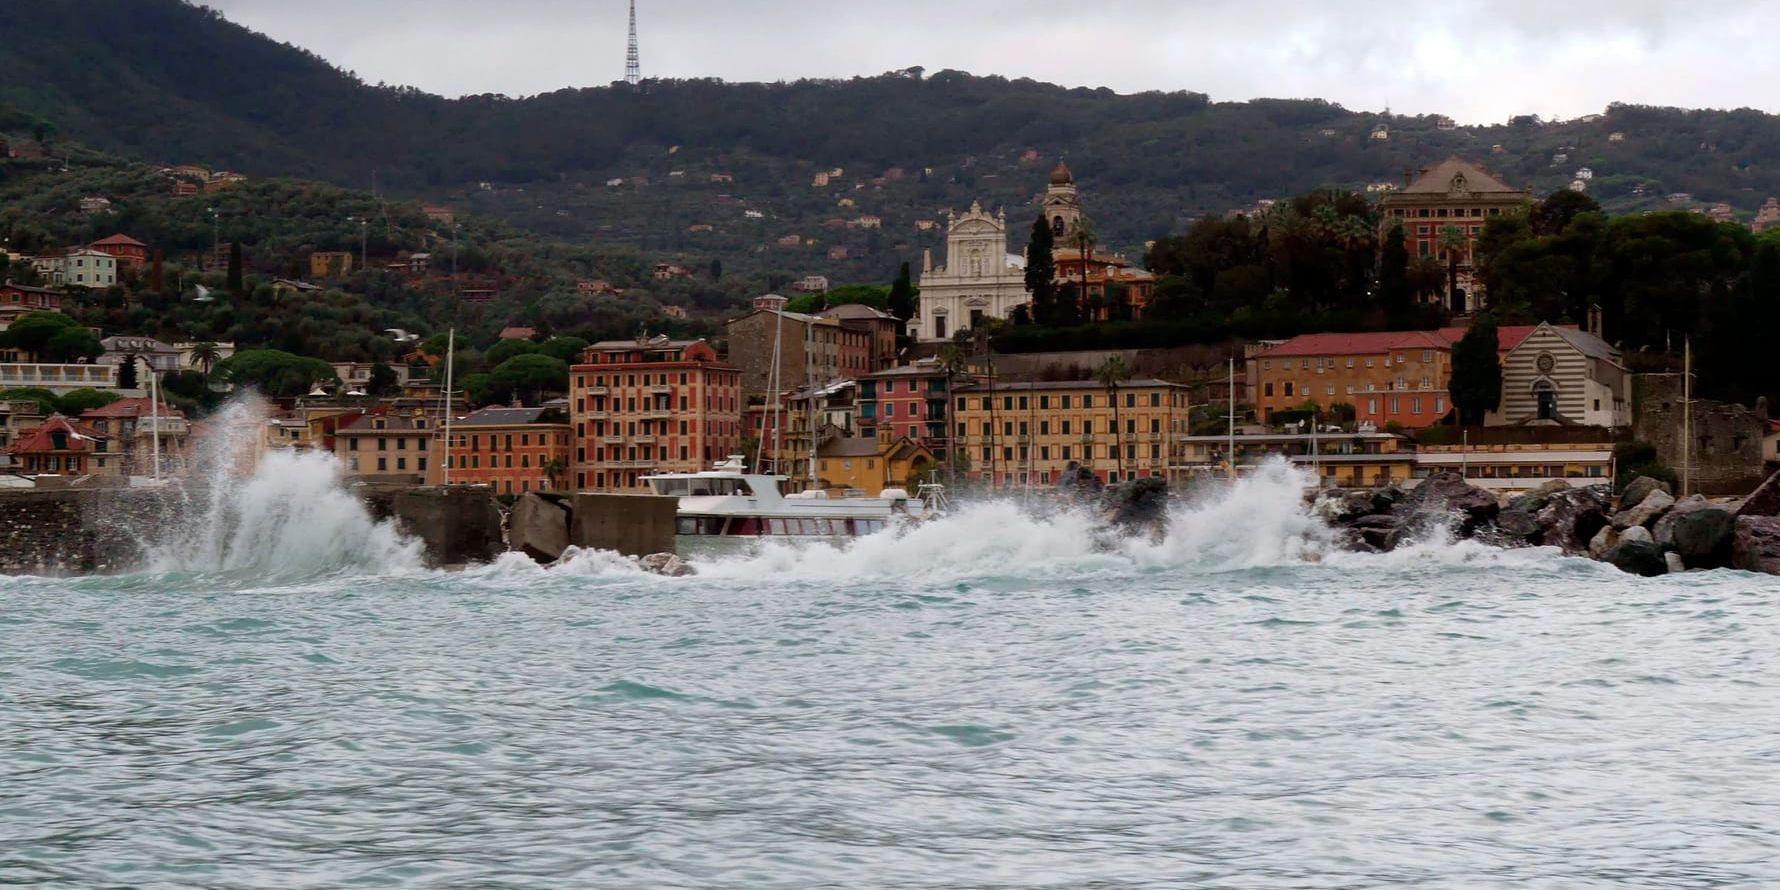 Vägen mellan kuststäderna Portofino och Santa Margherita Ligure har förstörts av de kraftiga regnen.